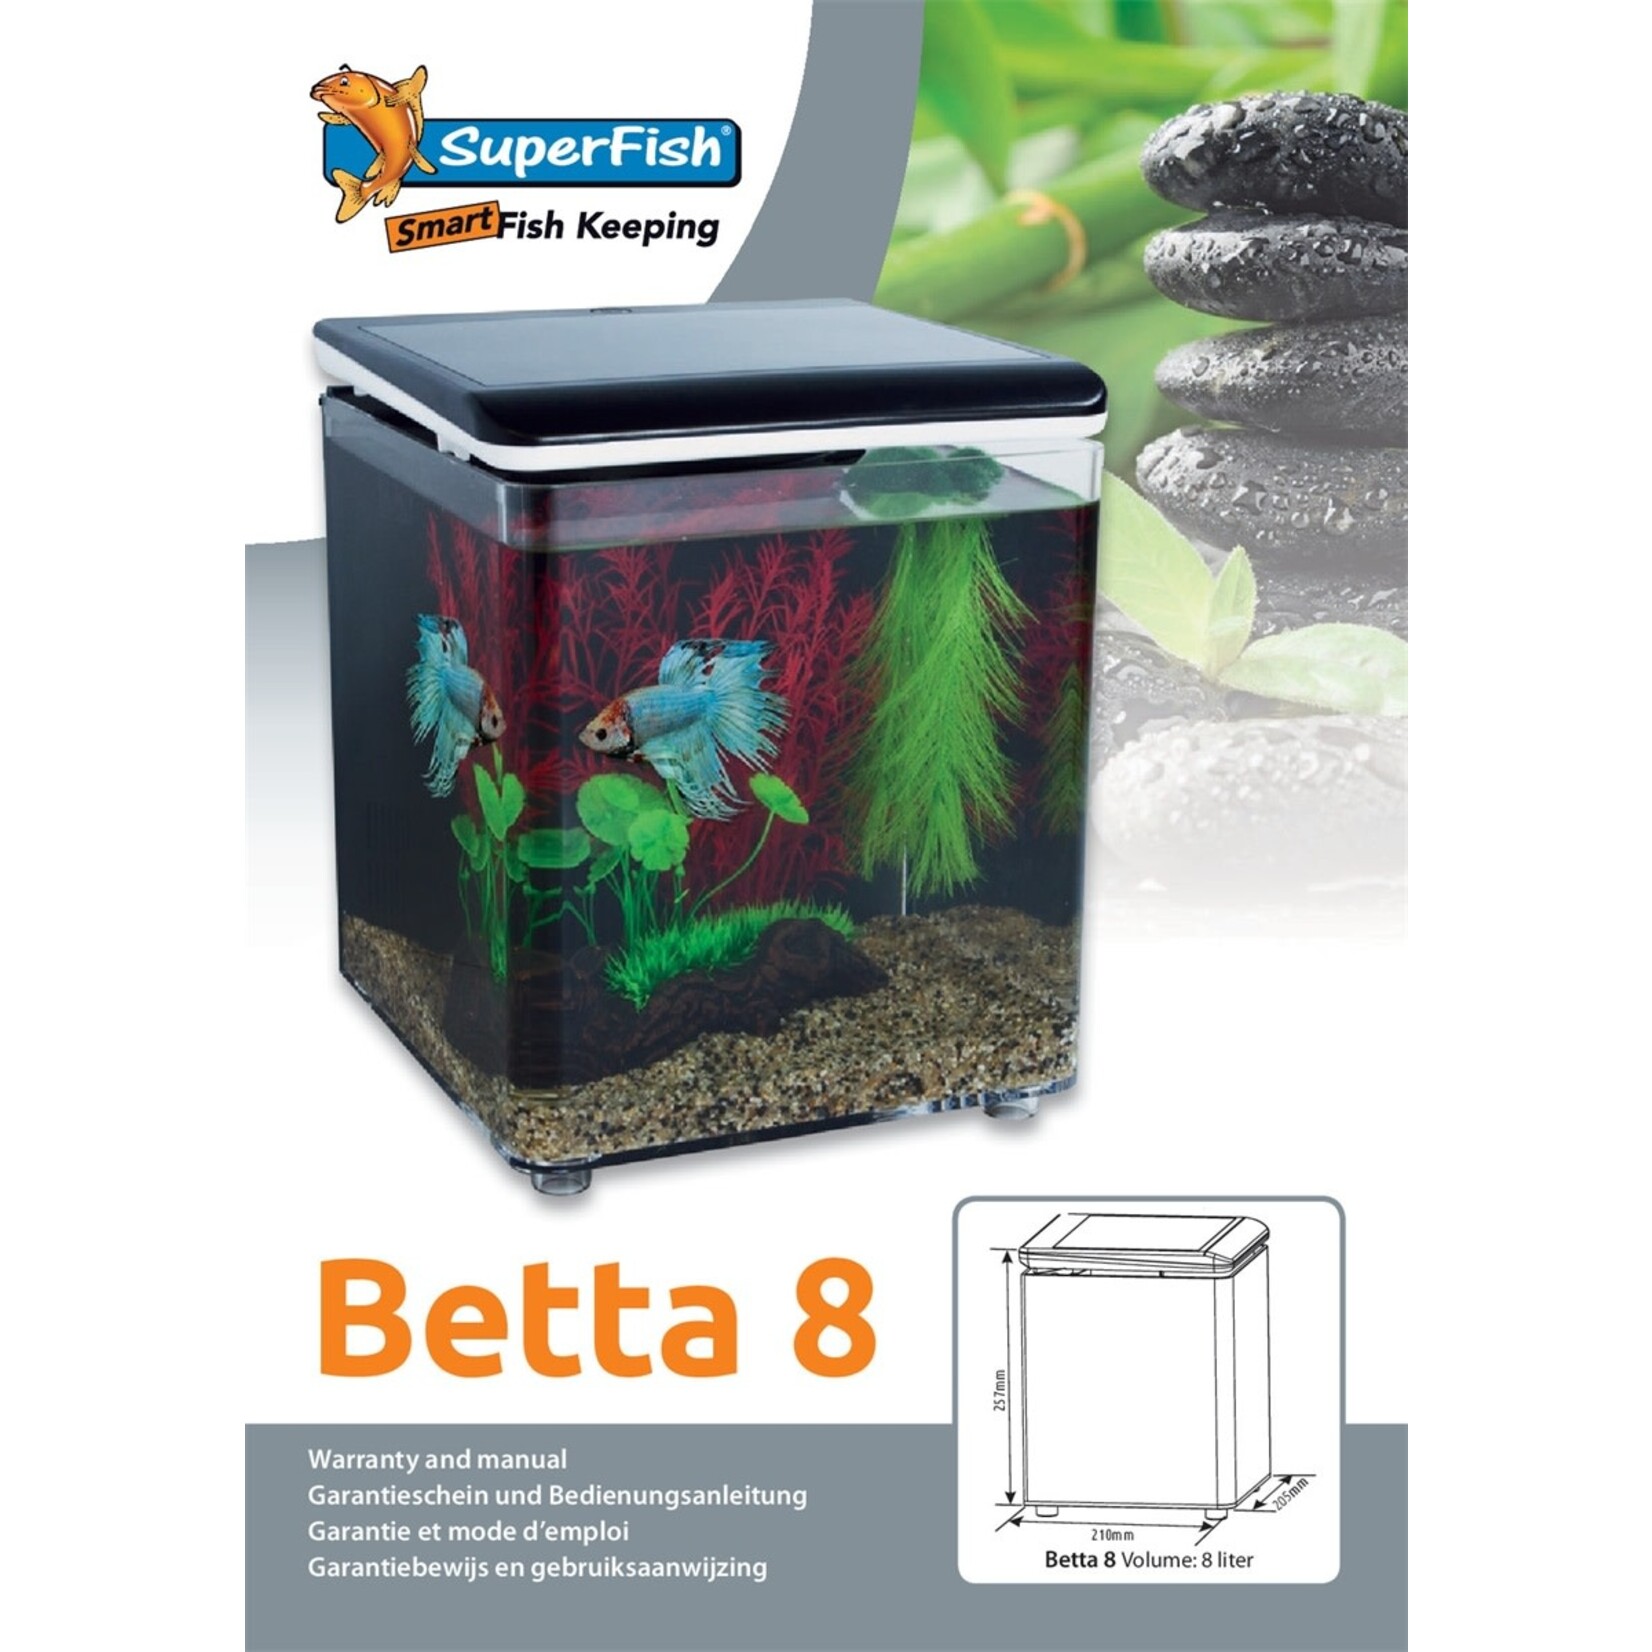 SuperFish Betta 8 aquarium black